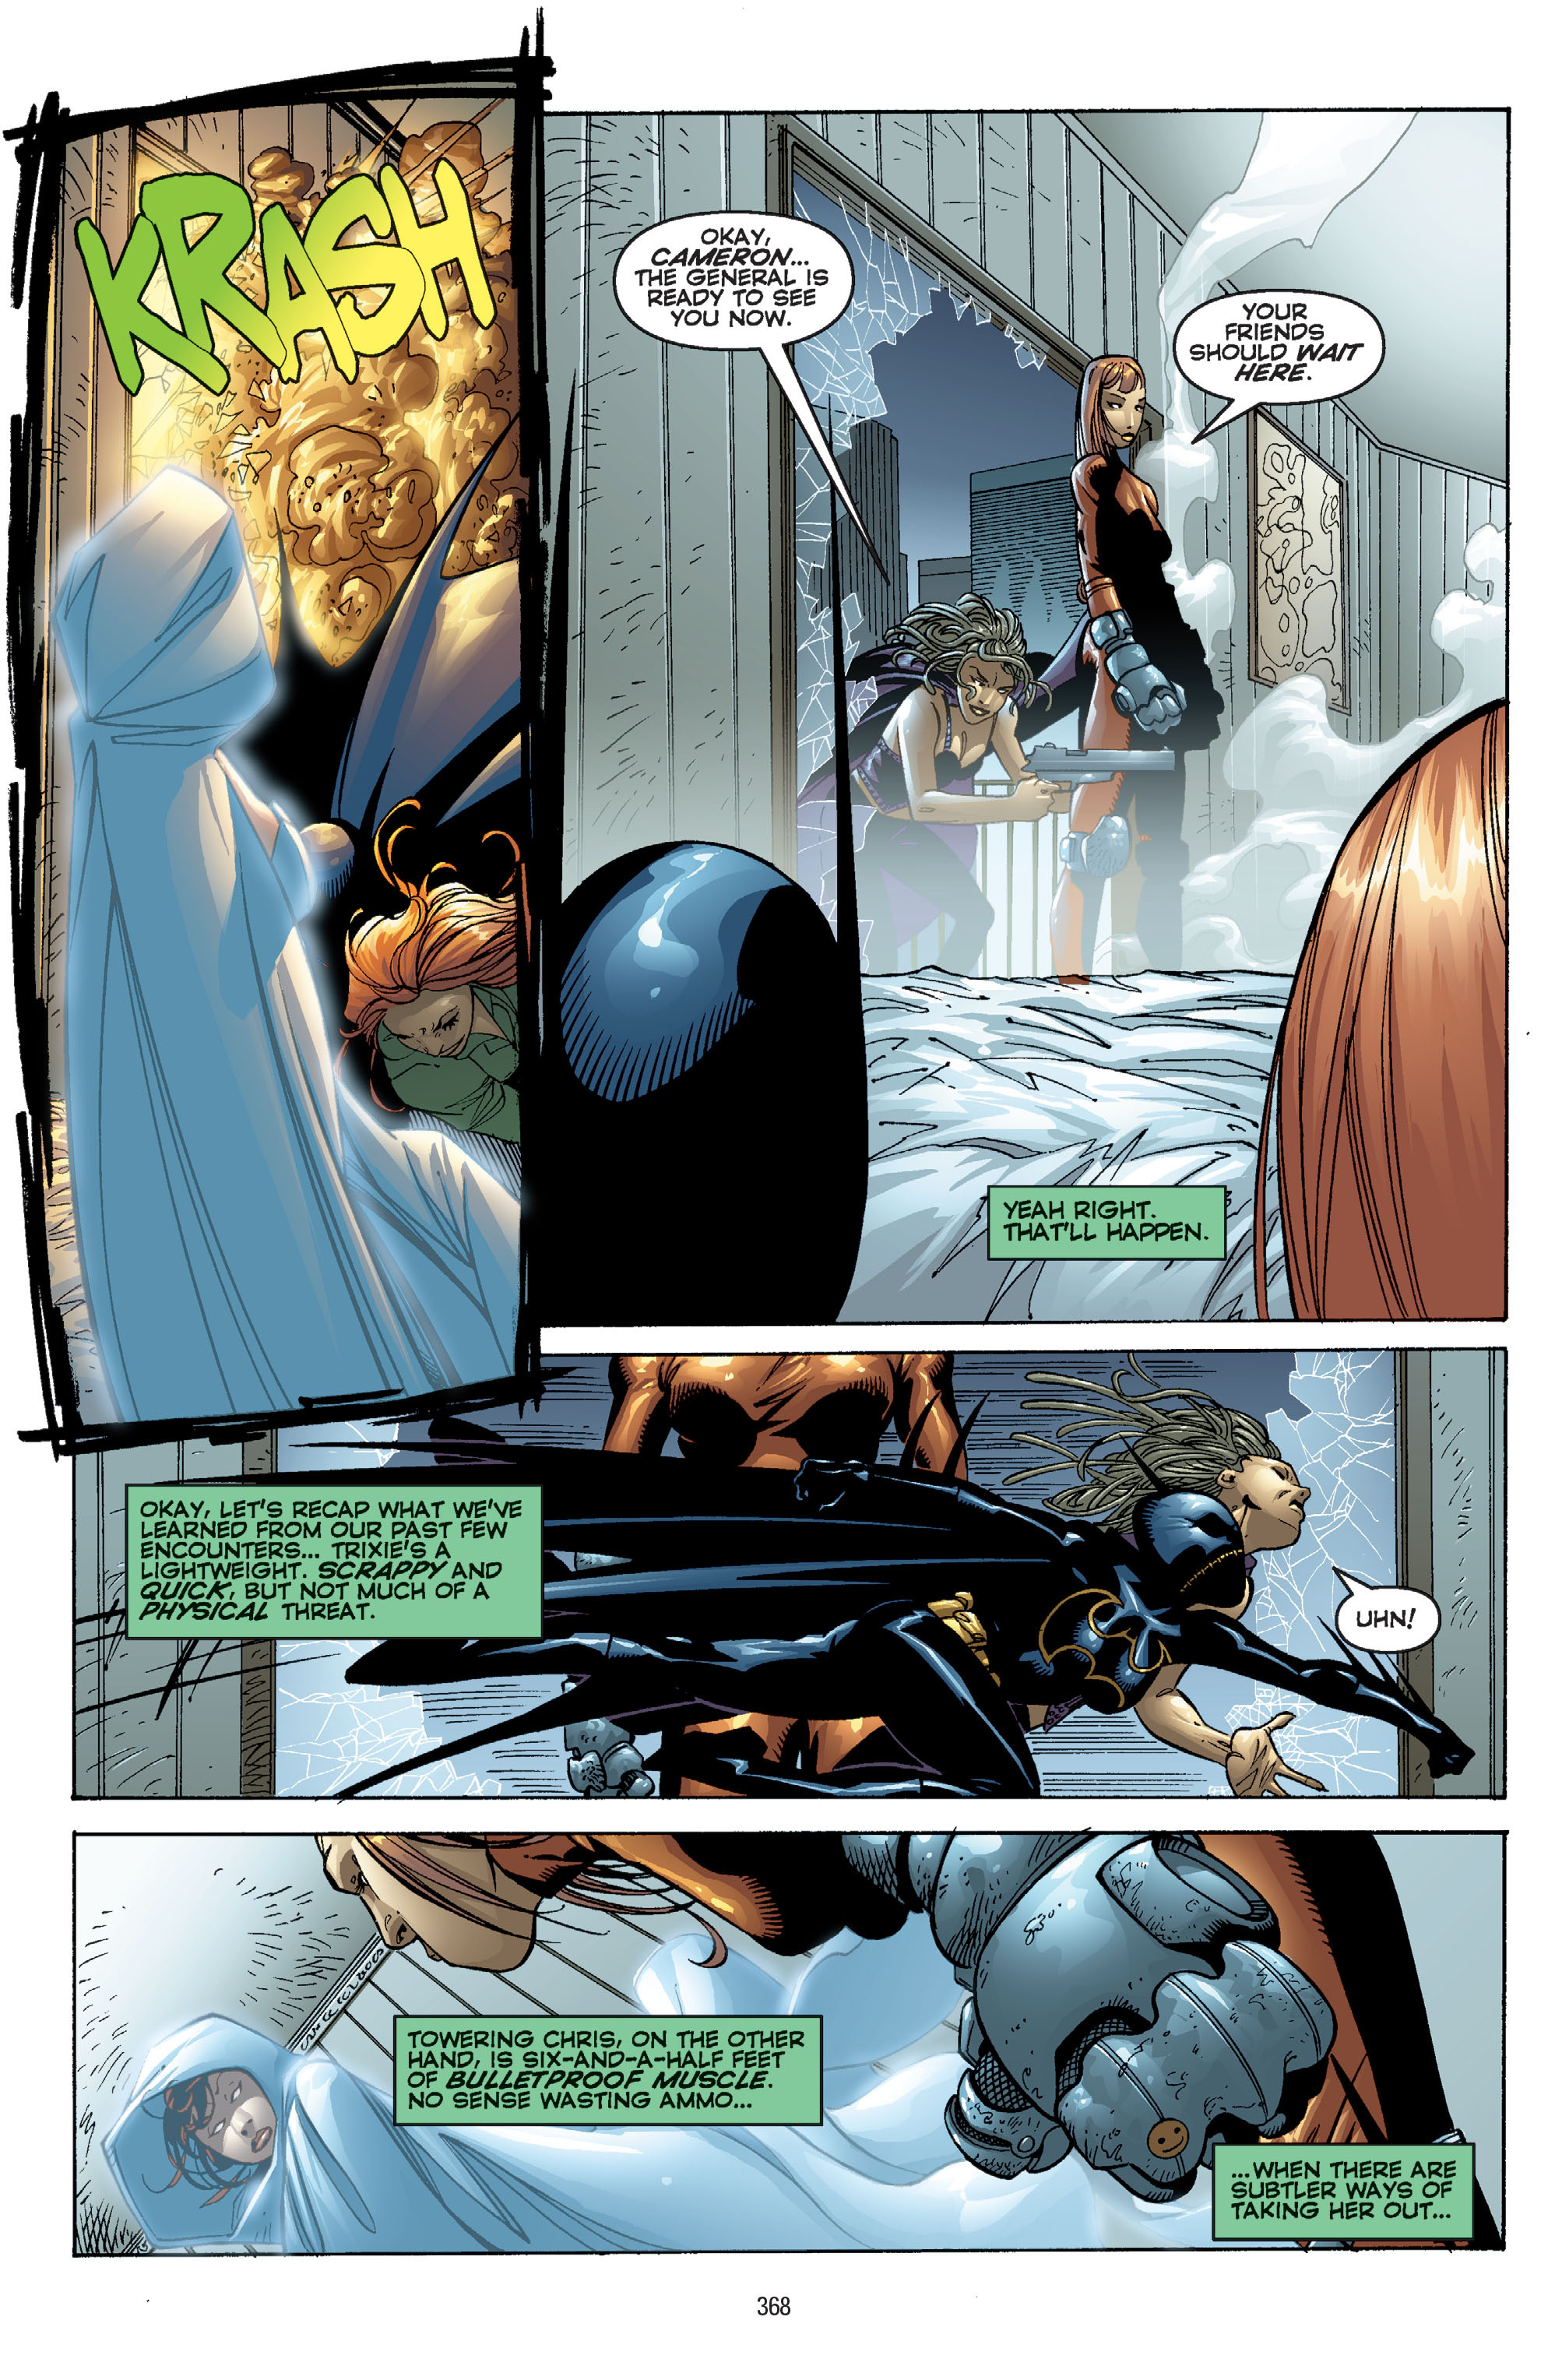 DC Comics/Dark Horse Comics: Justice League Full #1 - English 358